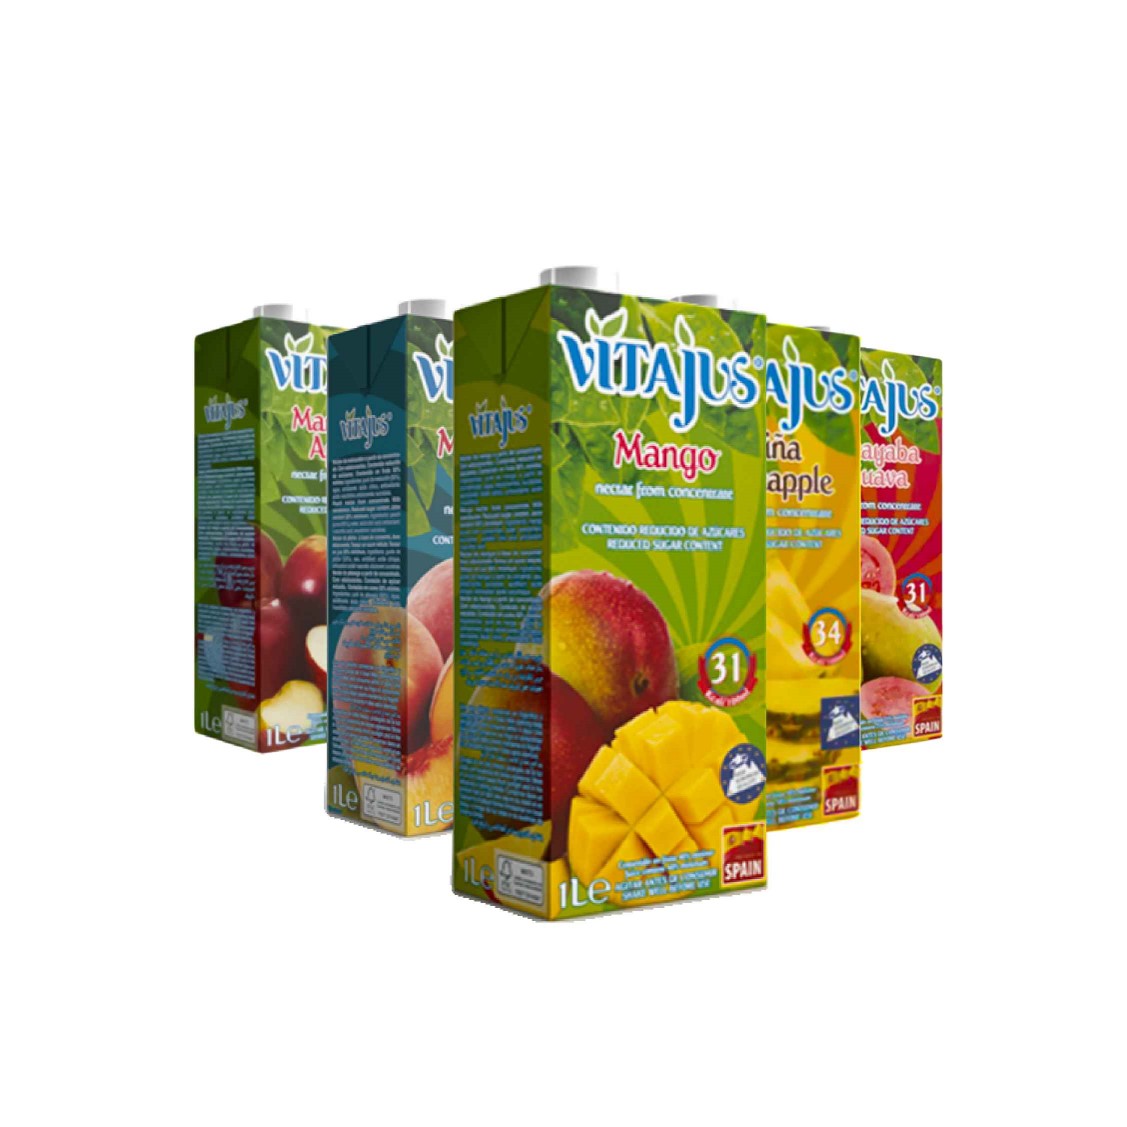 Pack de Néctar de Mango, Melocotón, Manzana, Guayaba y Piña